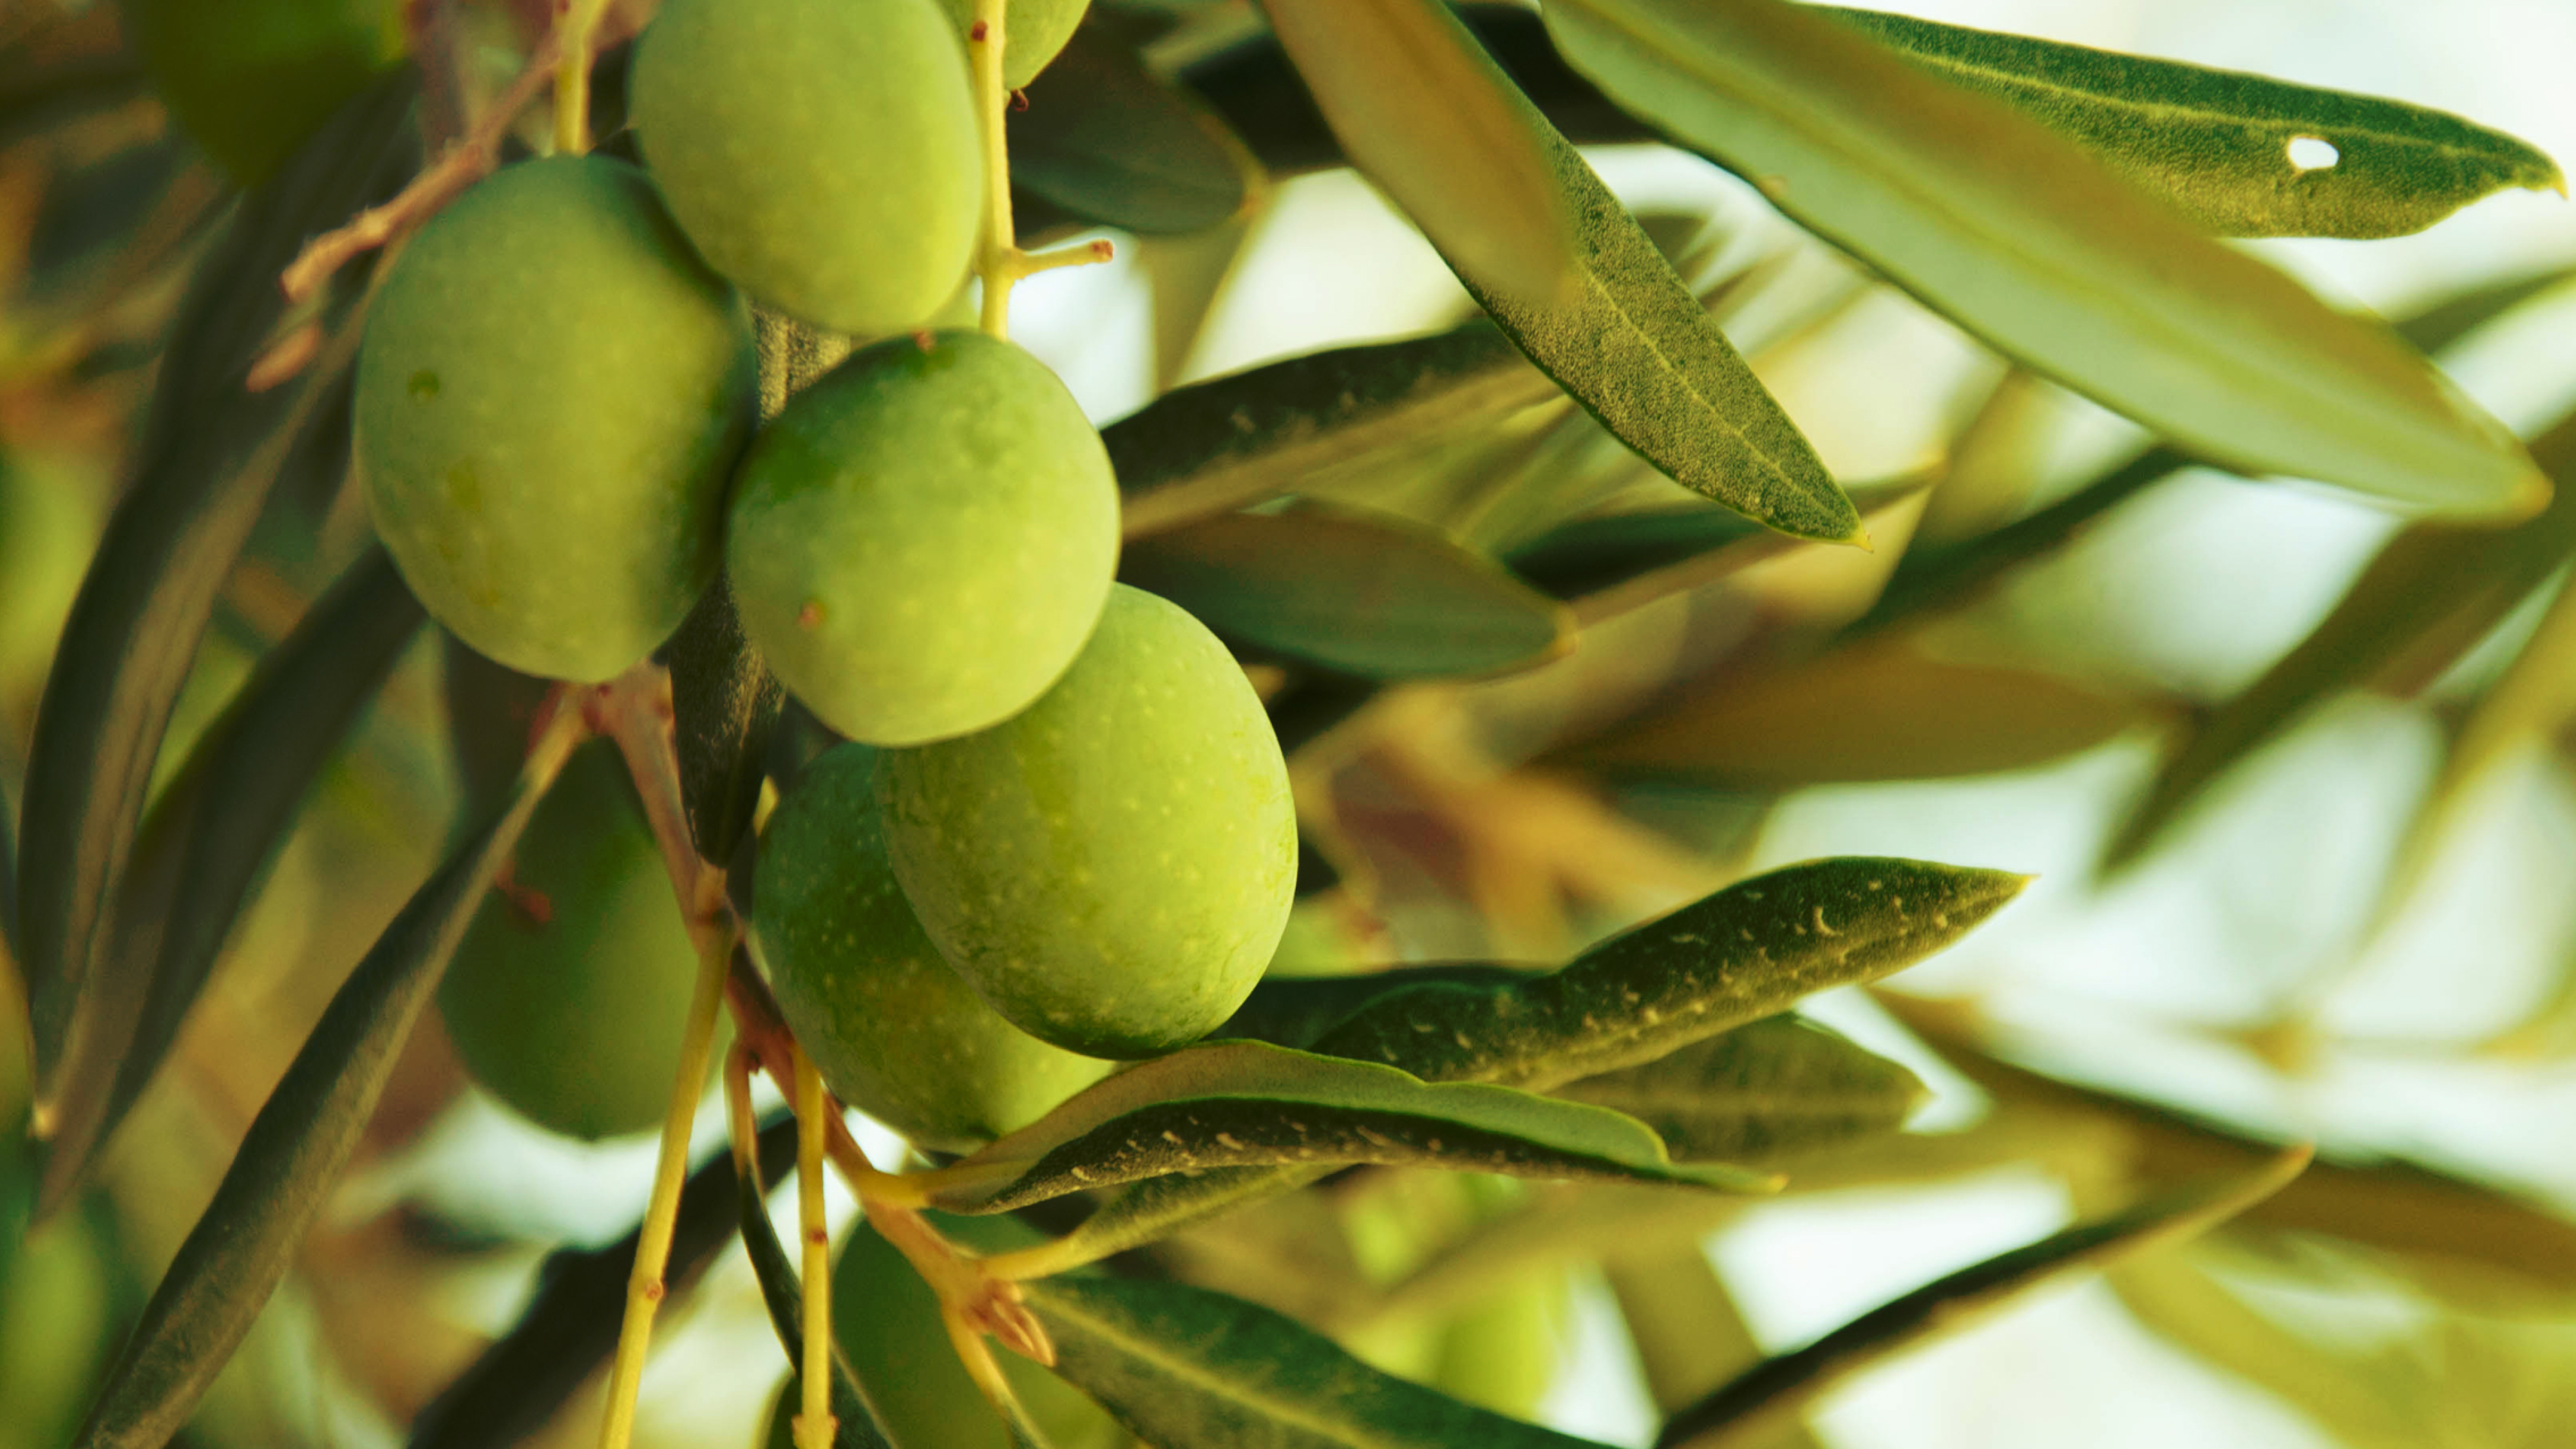 Strauch mit grünen Oliven in der Natur.